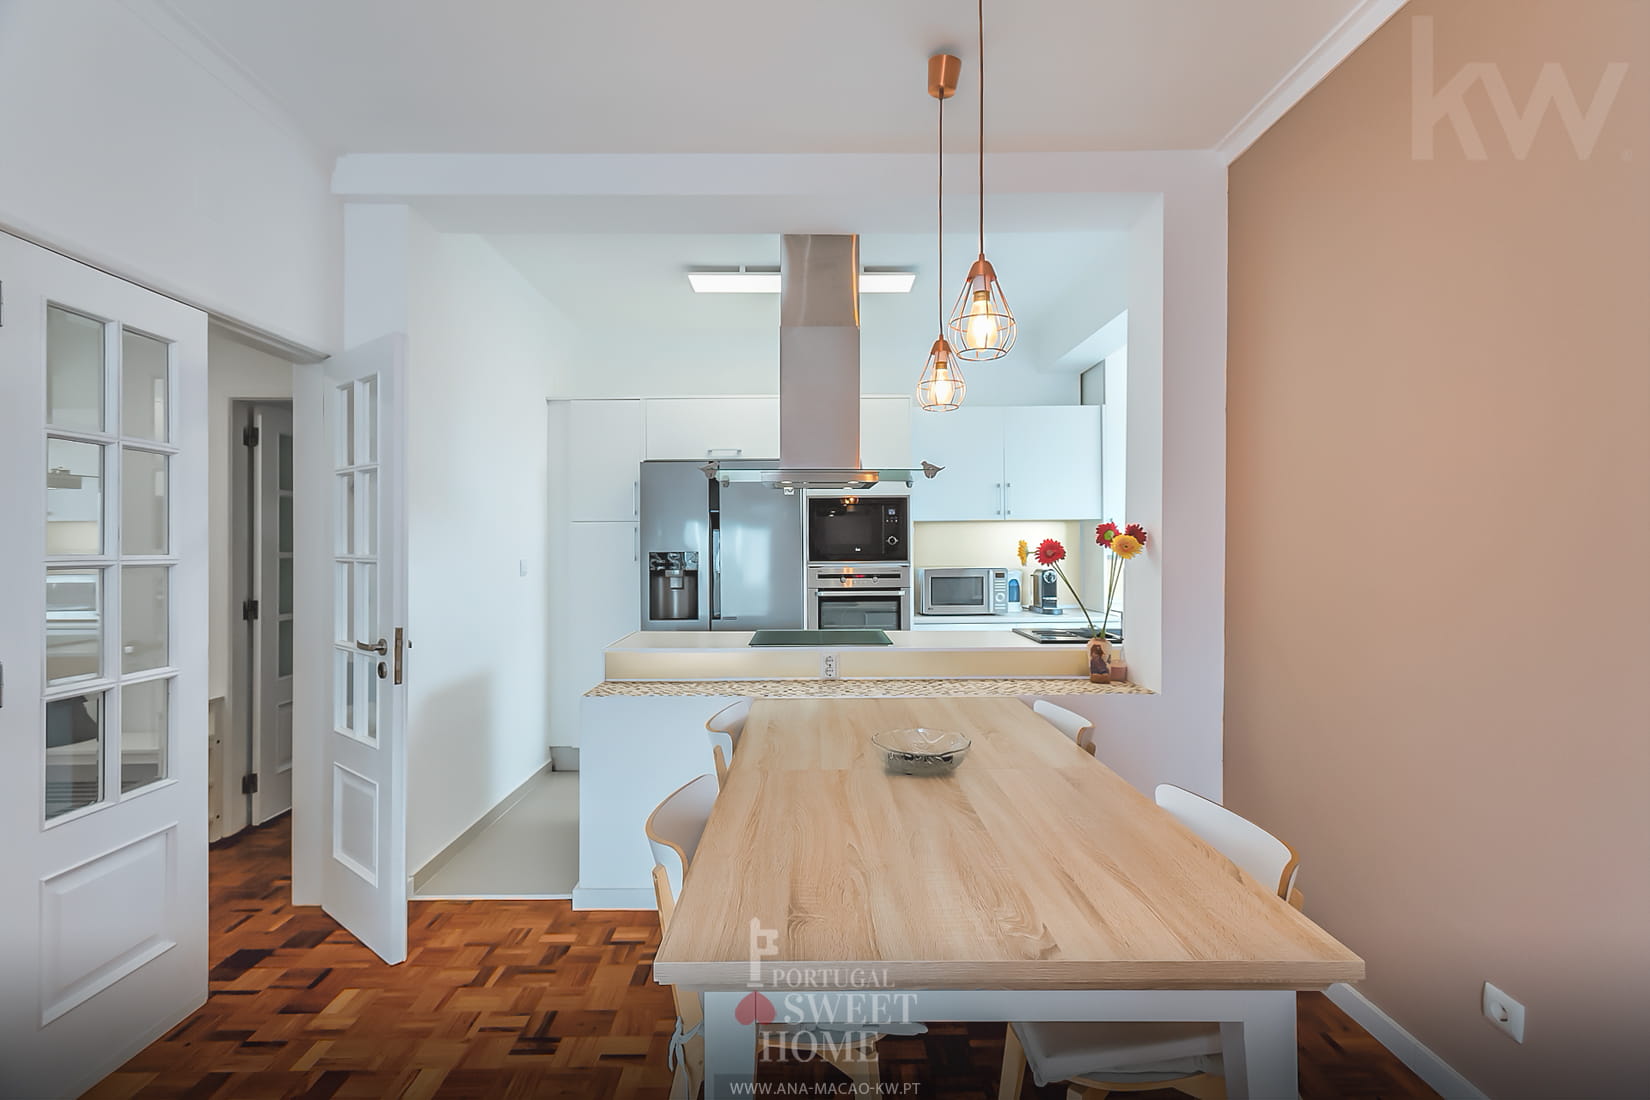 Sala de estar e de refeições (19,6 m²) com ligação à cozinha e à sala de refeições